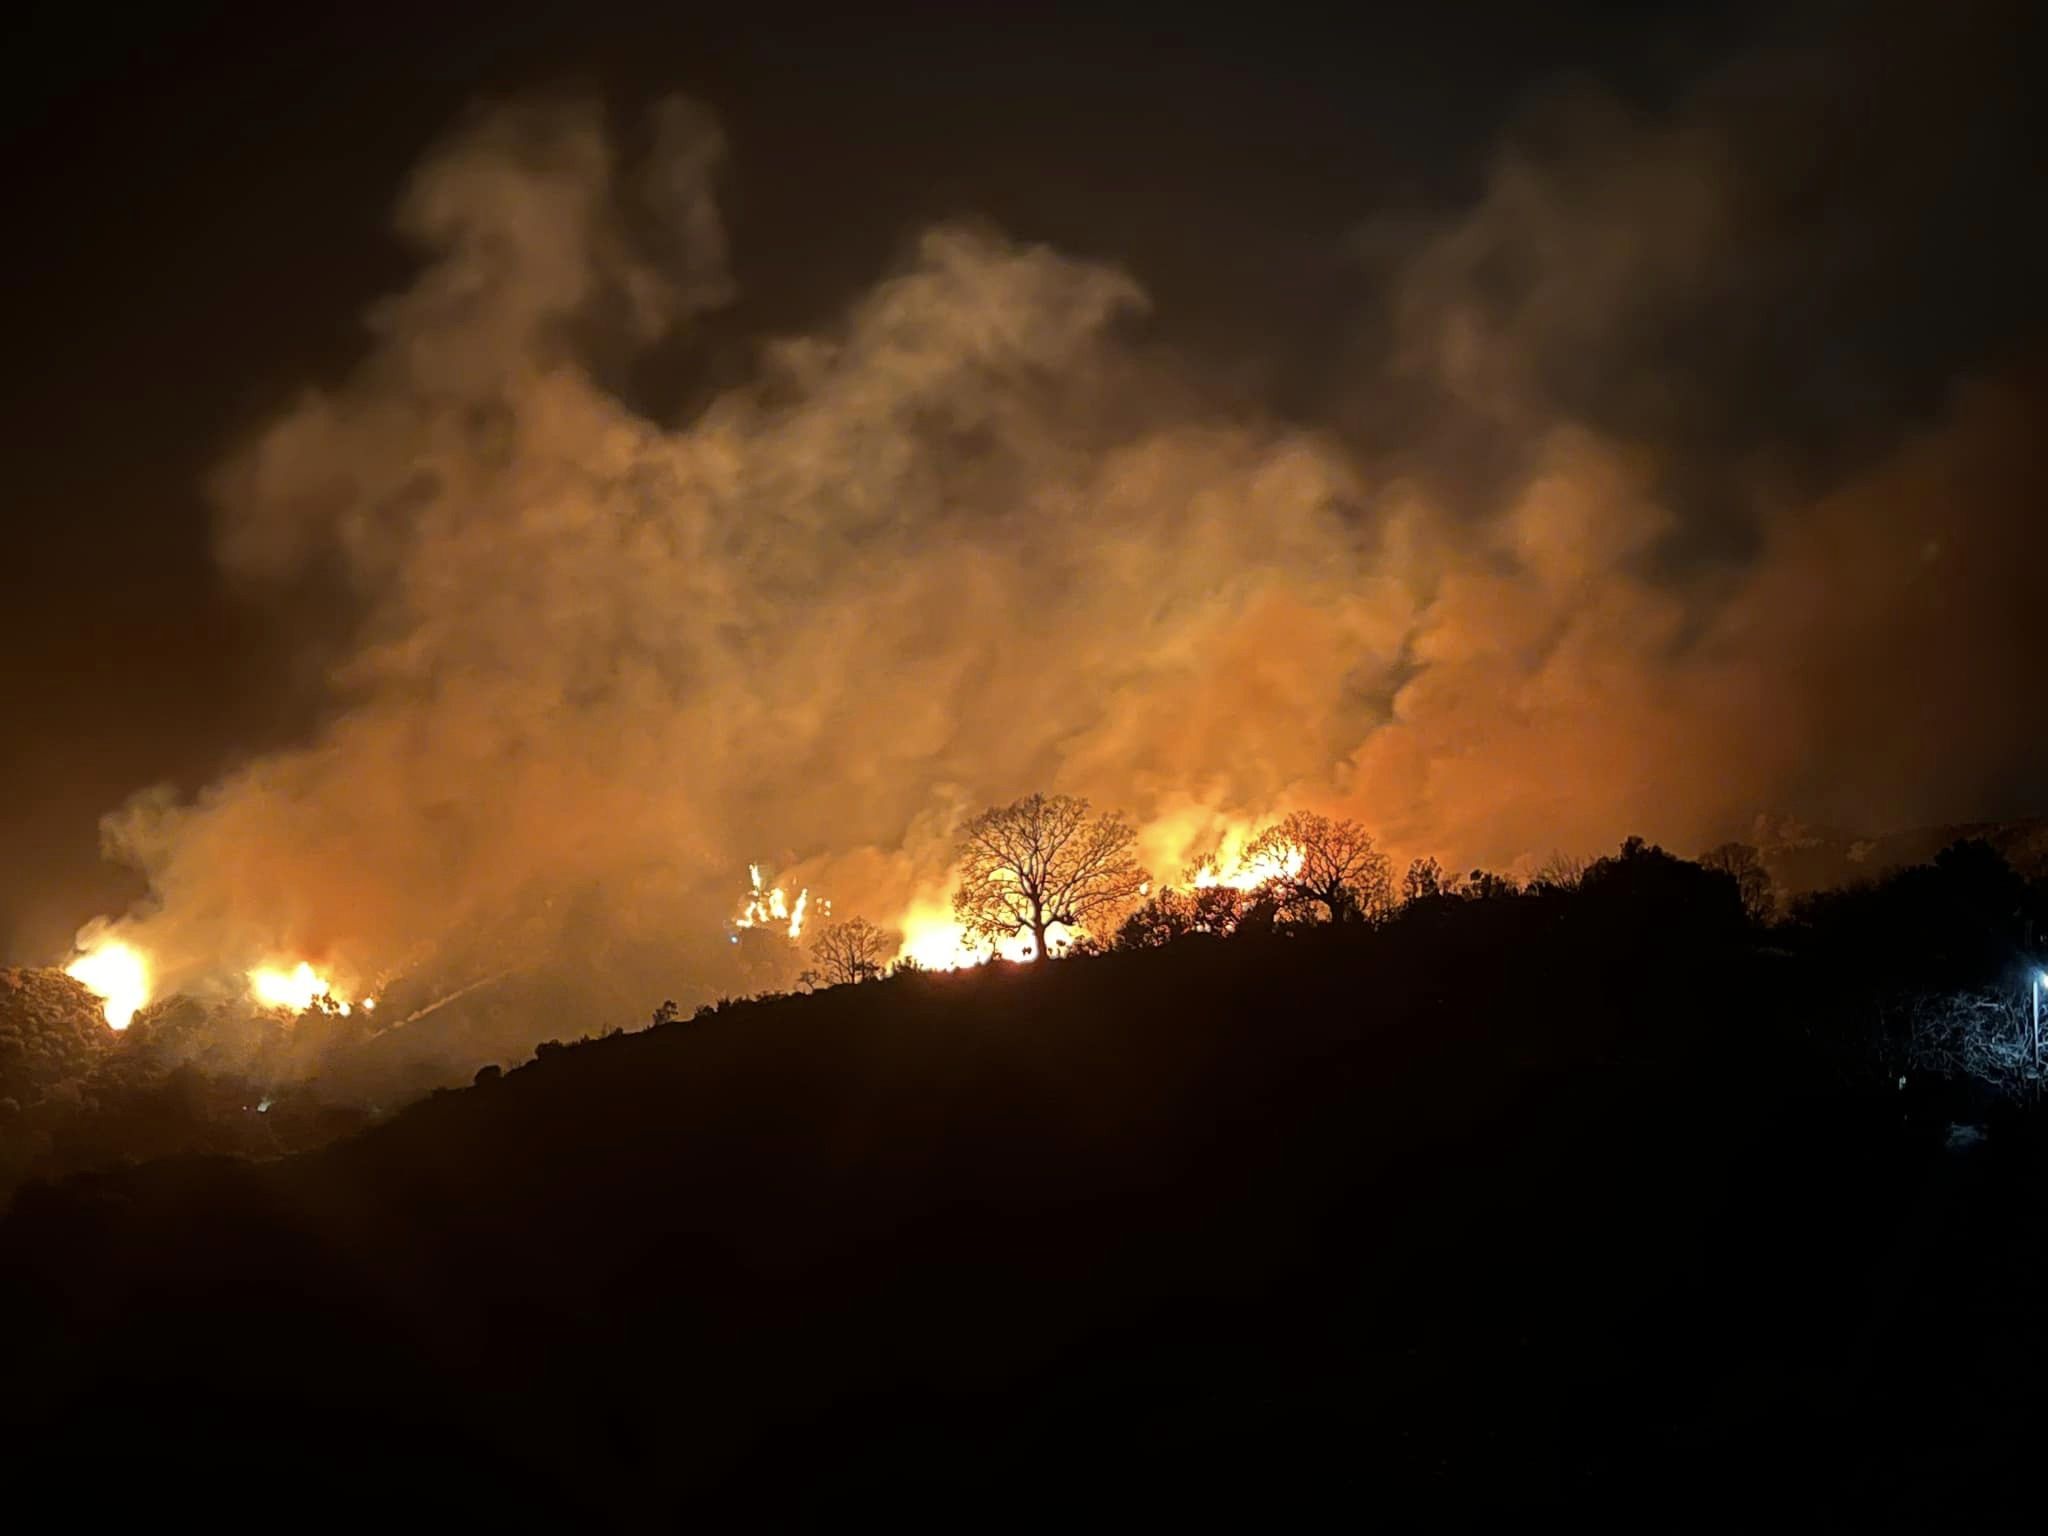 Μεγάλη φωτιά στον Ταϋγετο, πλησιάζει στον οικισμό Αράχωβα και εξετάζεται εκκένωση